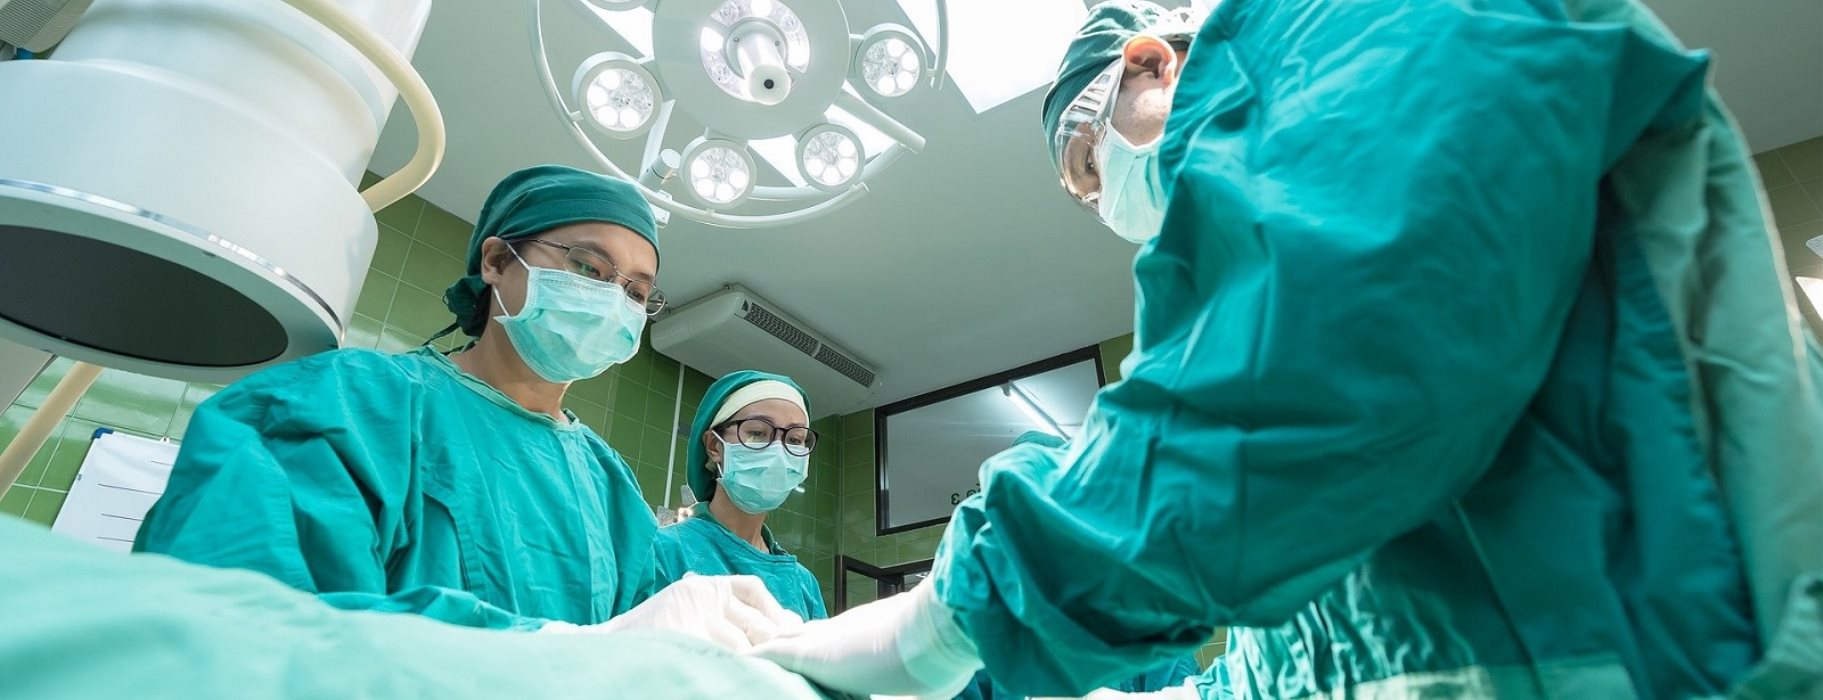 Το γνωρίζατε; – Δείτε γιατί οι χειρουργοί φορούν μπλε ή πράσινες στολές